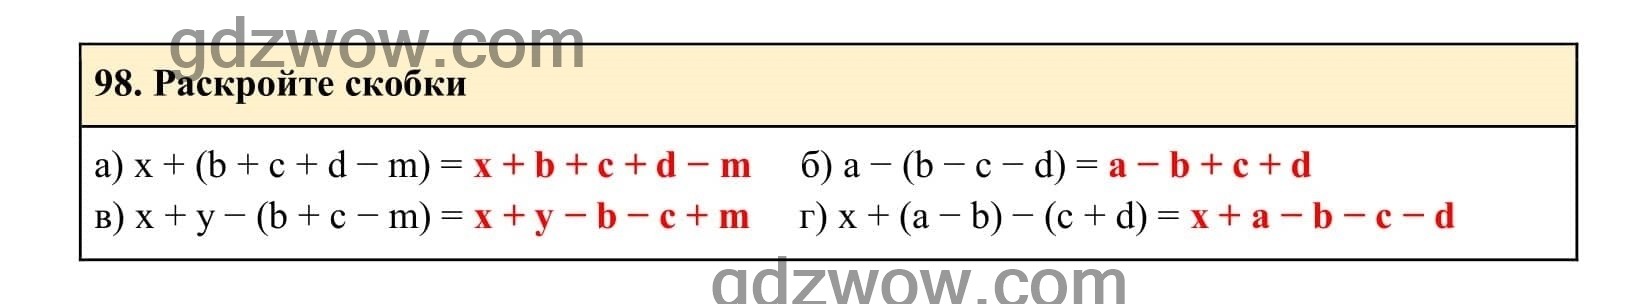 Упражнение 98 - ГДЗ по Алгебре 7 класс Учебник Макарычев (решебник) - GDZwow